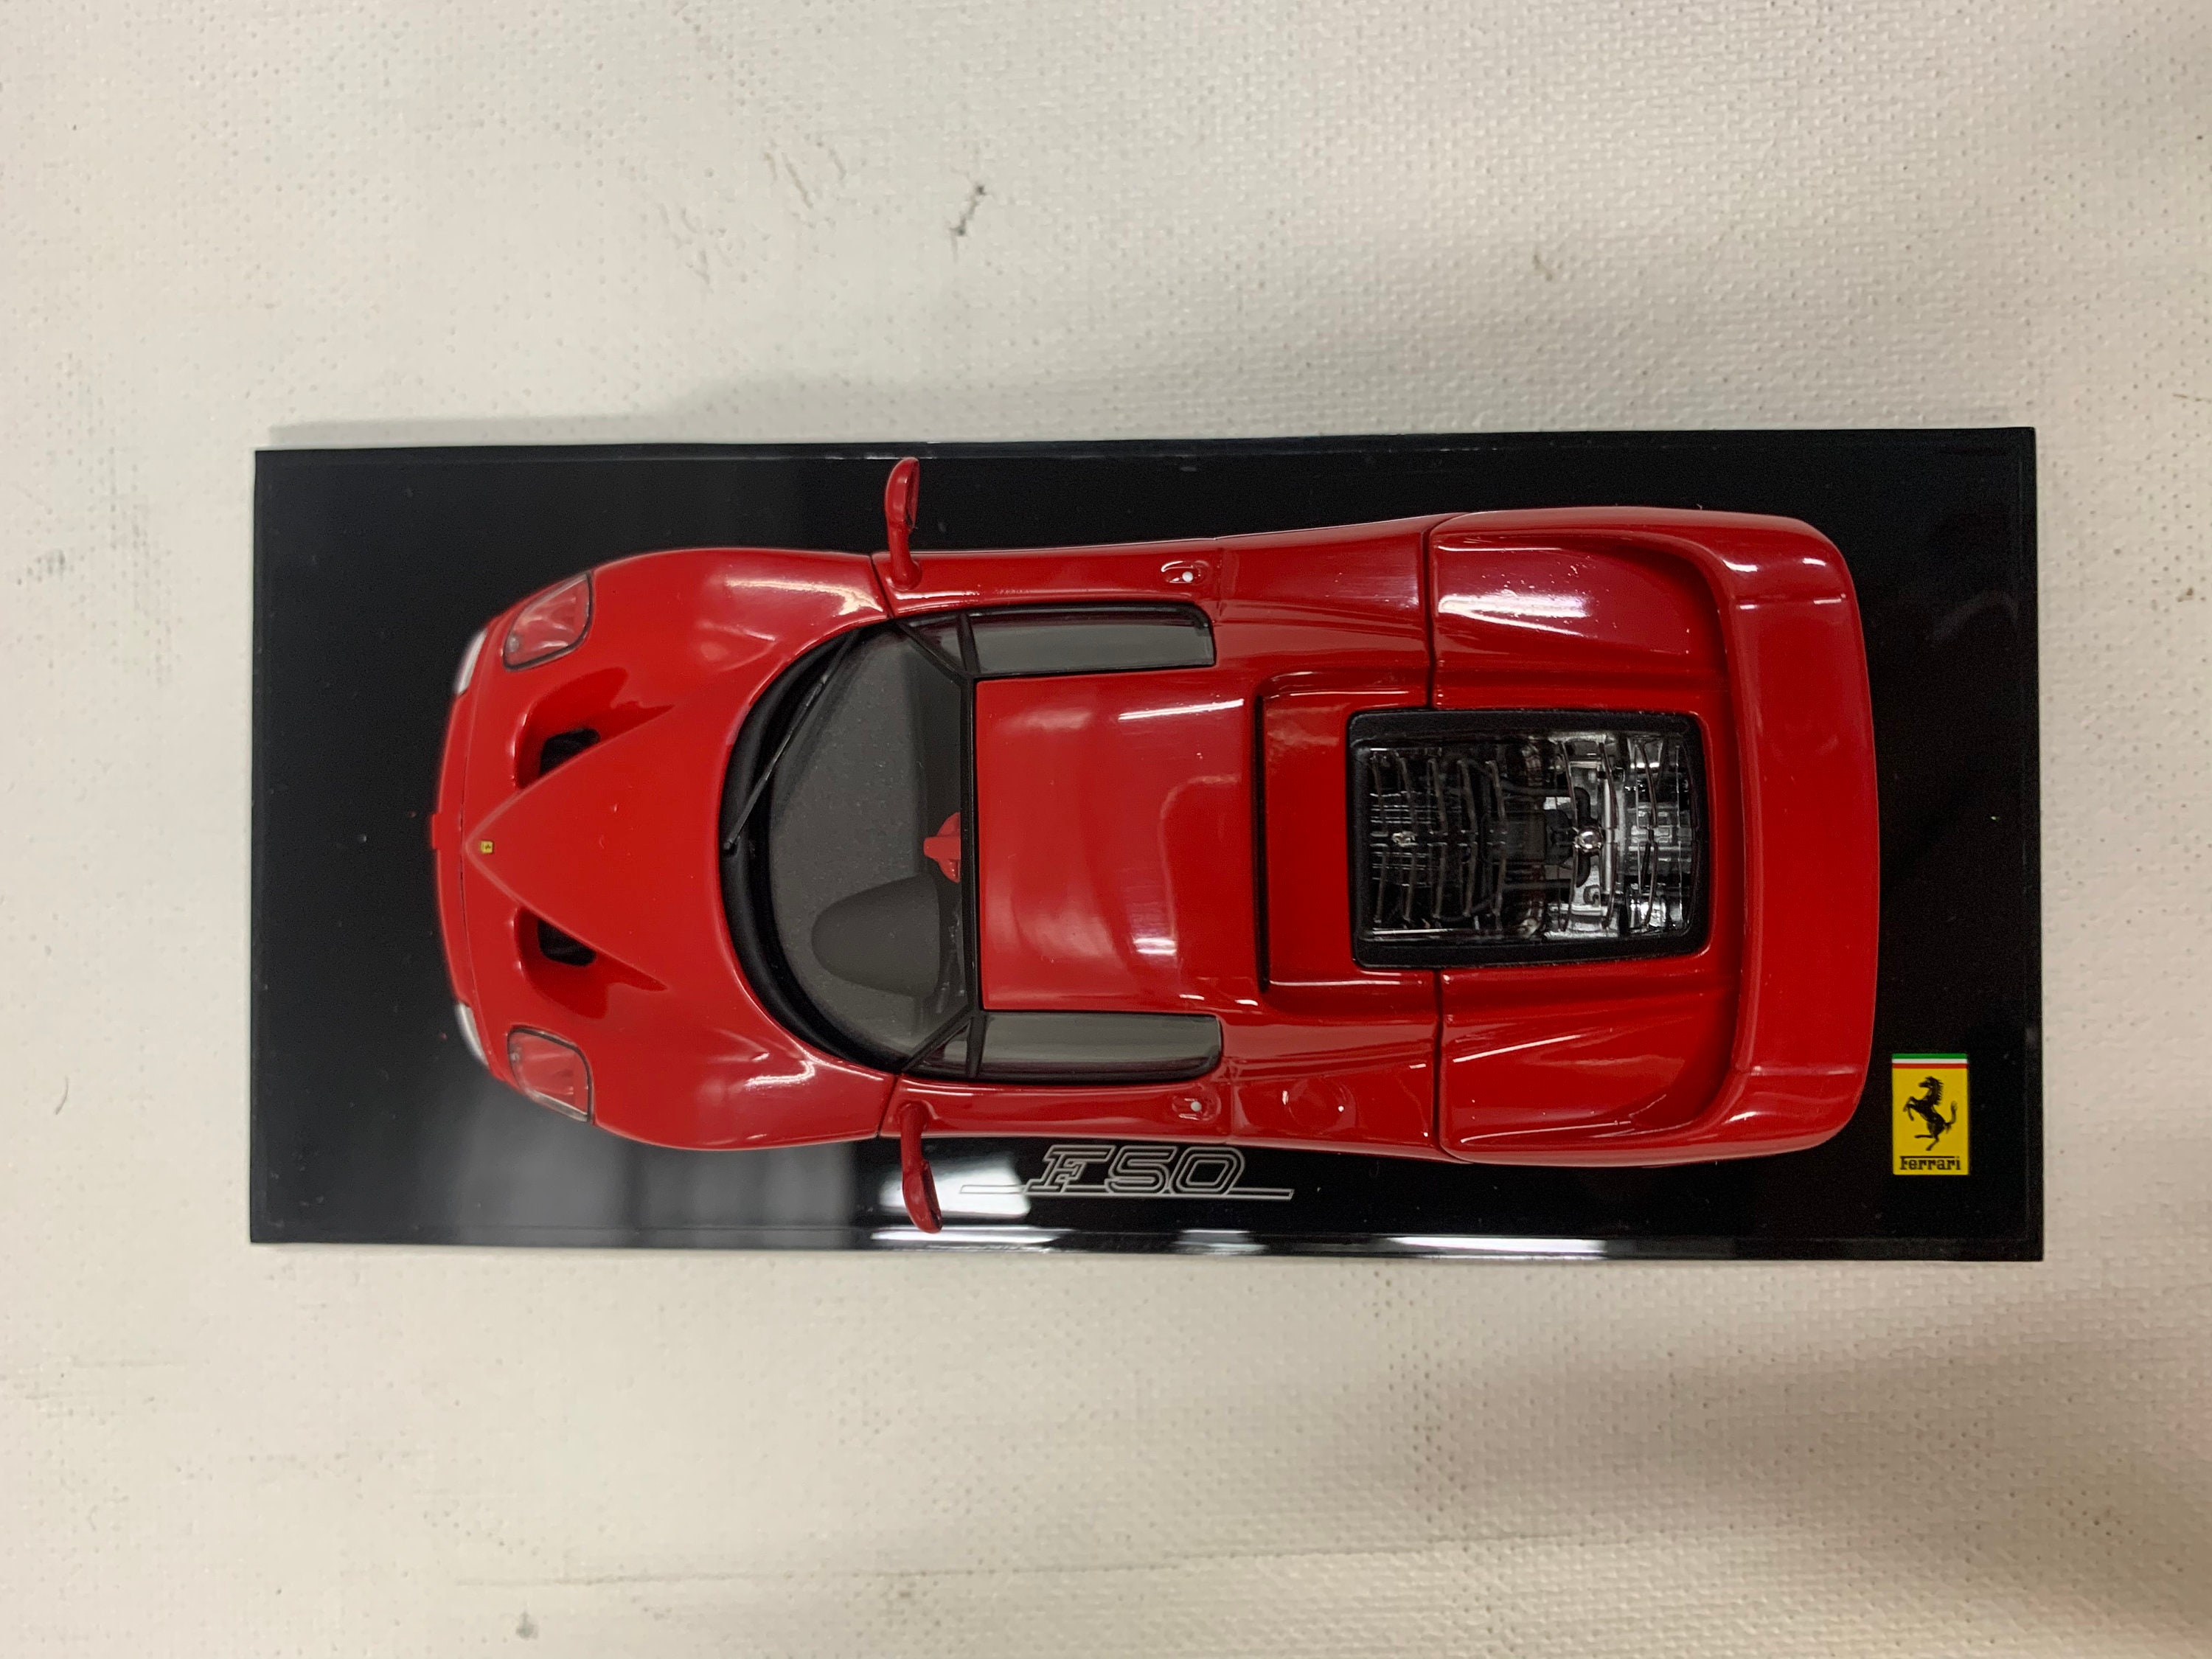 Ferrari F50 Red Black Interior, Kyosho 1/43 05091RB - Etsy